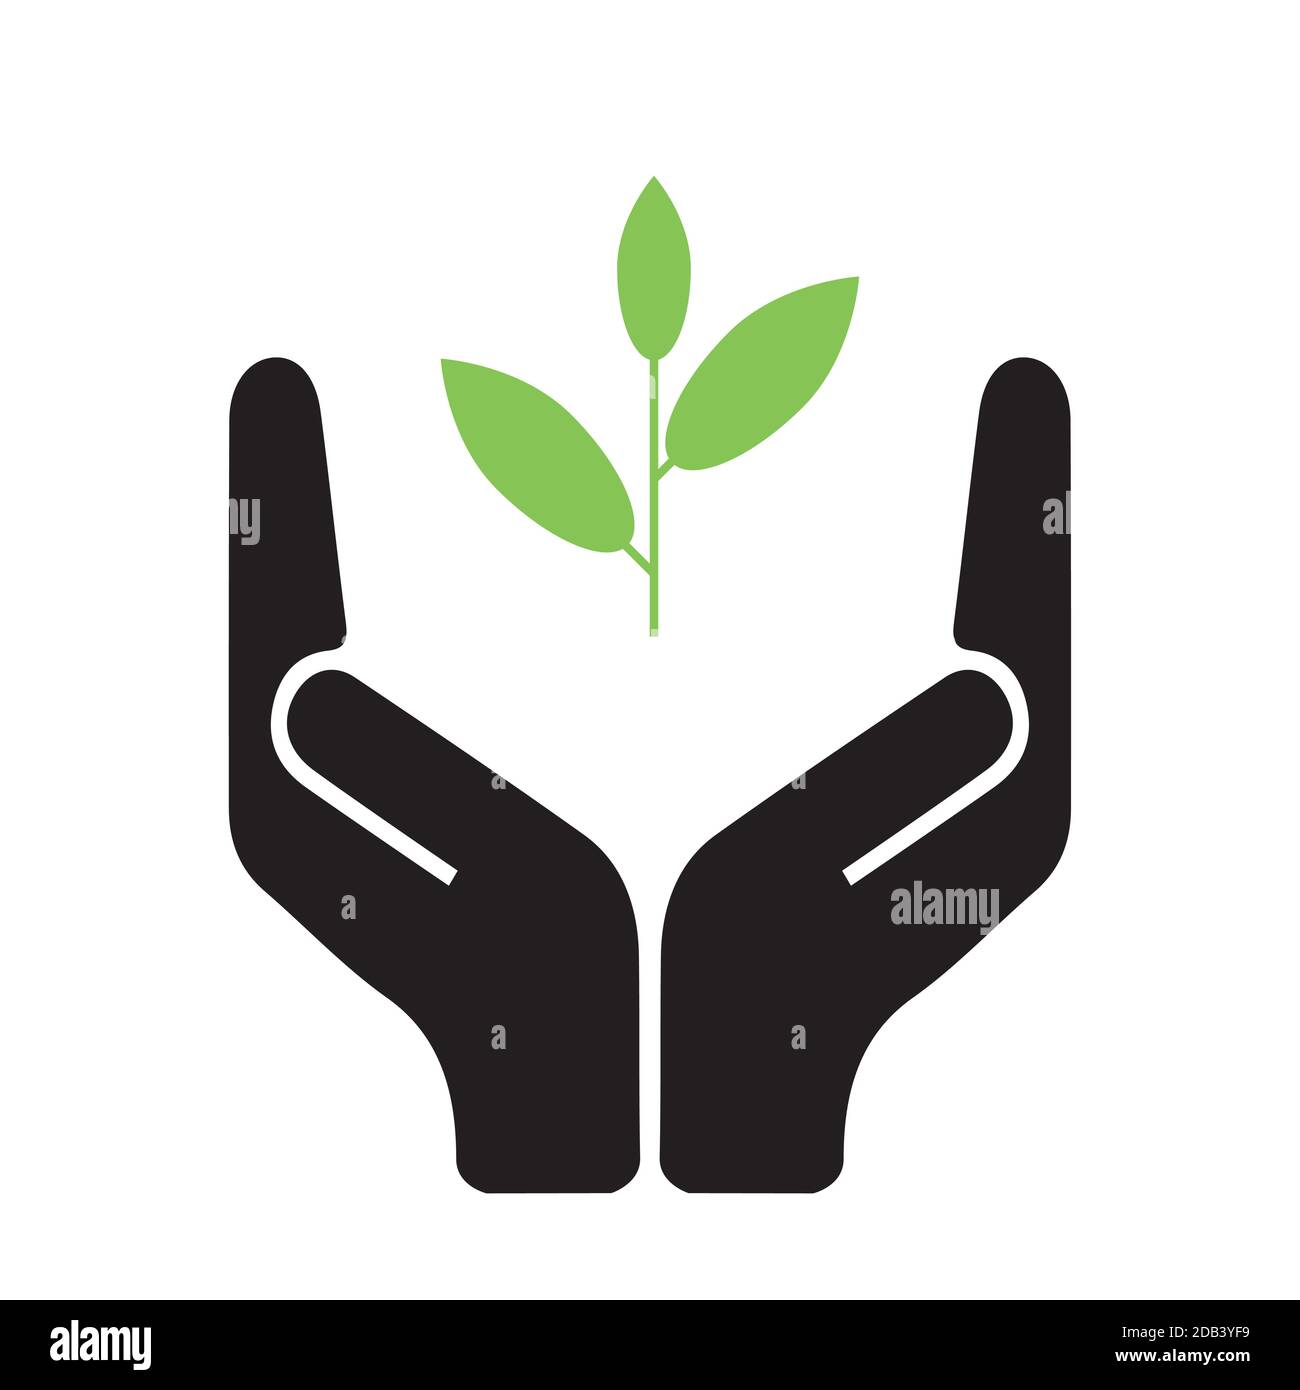 Griff mit Sorgfalt Symbol hält eine neue Pflanze, Symbol für grün, erneuerbare und umweltfreundliche Zukunft, minimalistische Vektor-Illustration Stock Vektor